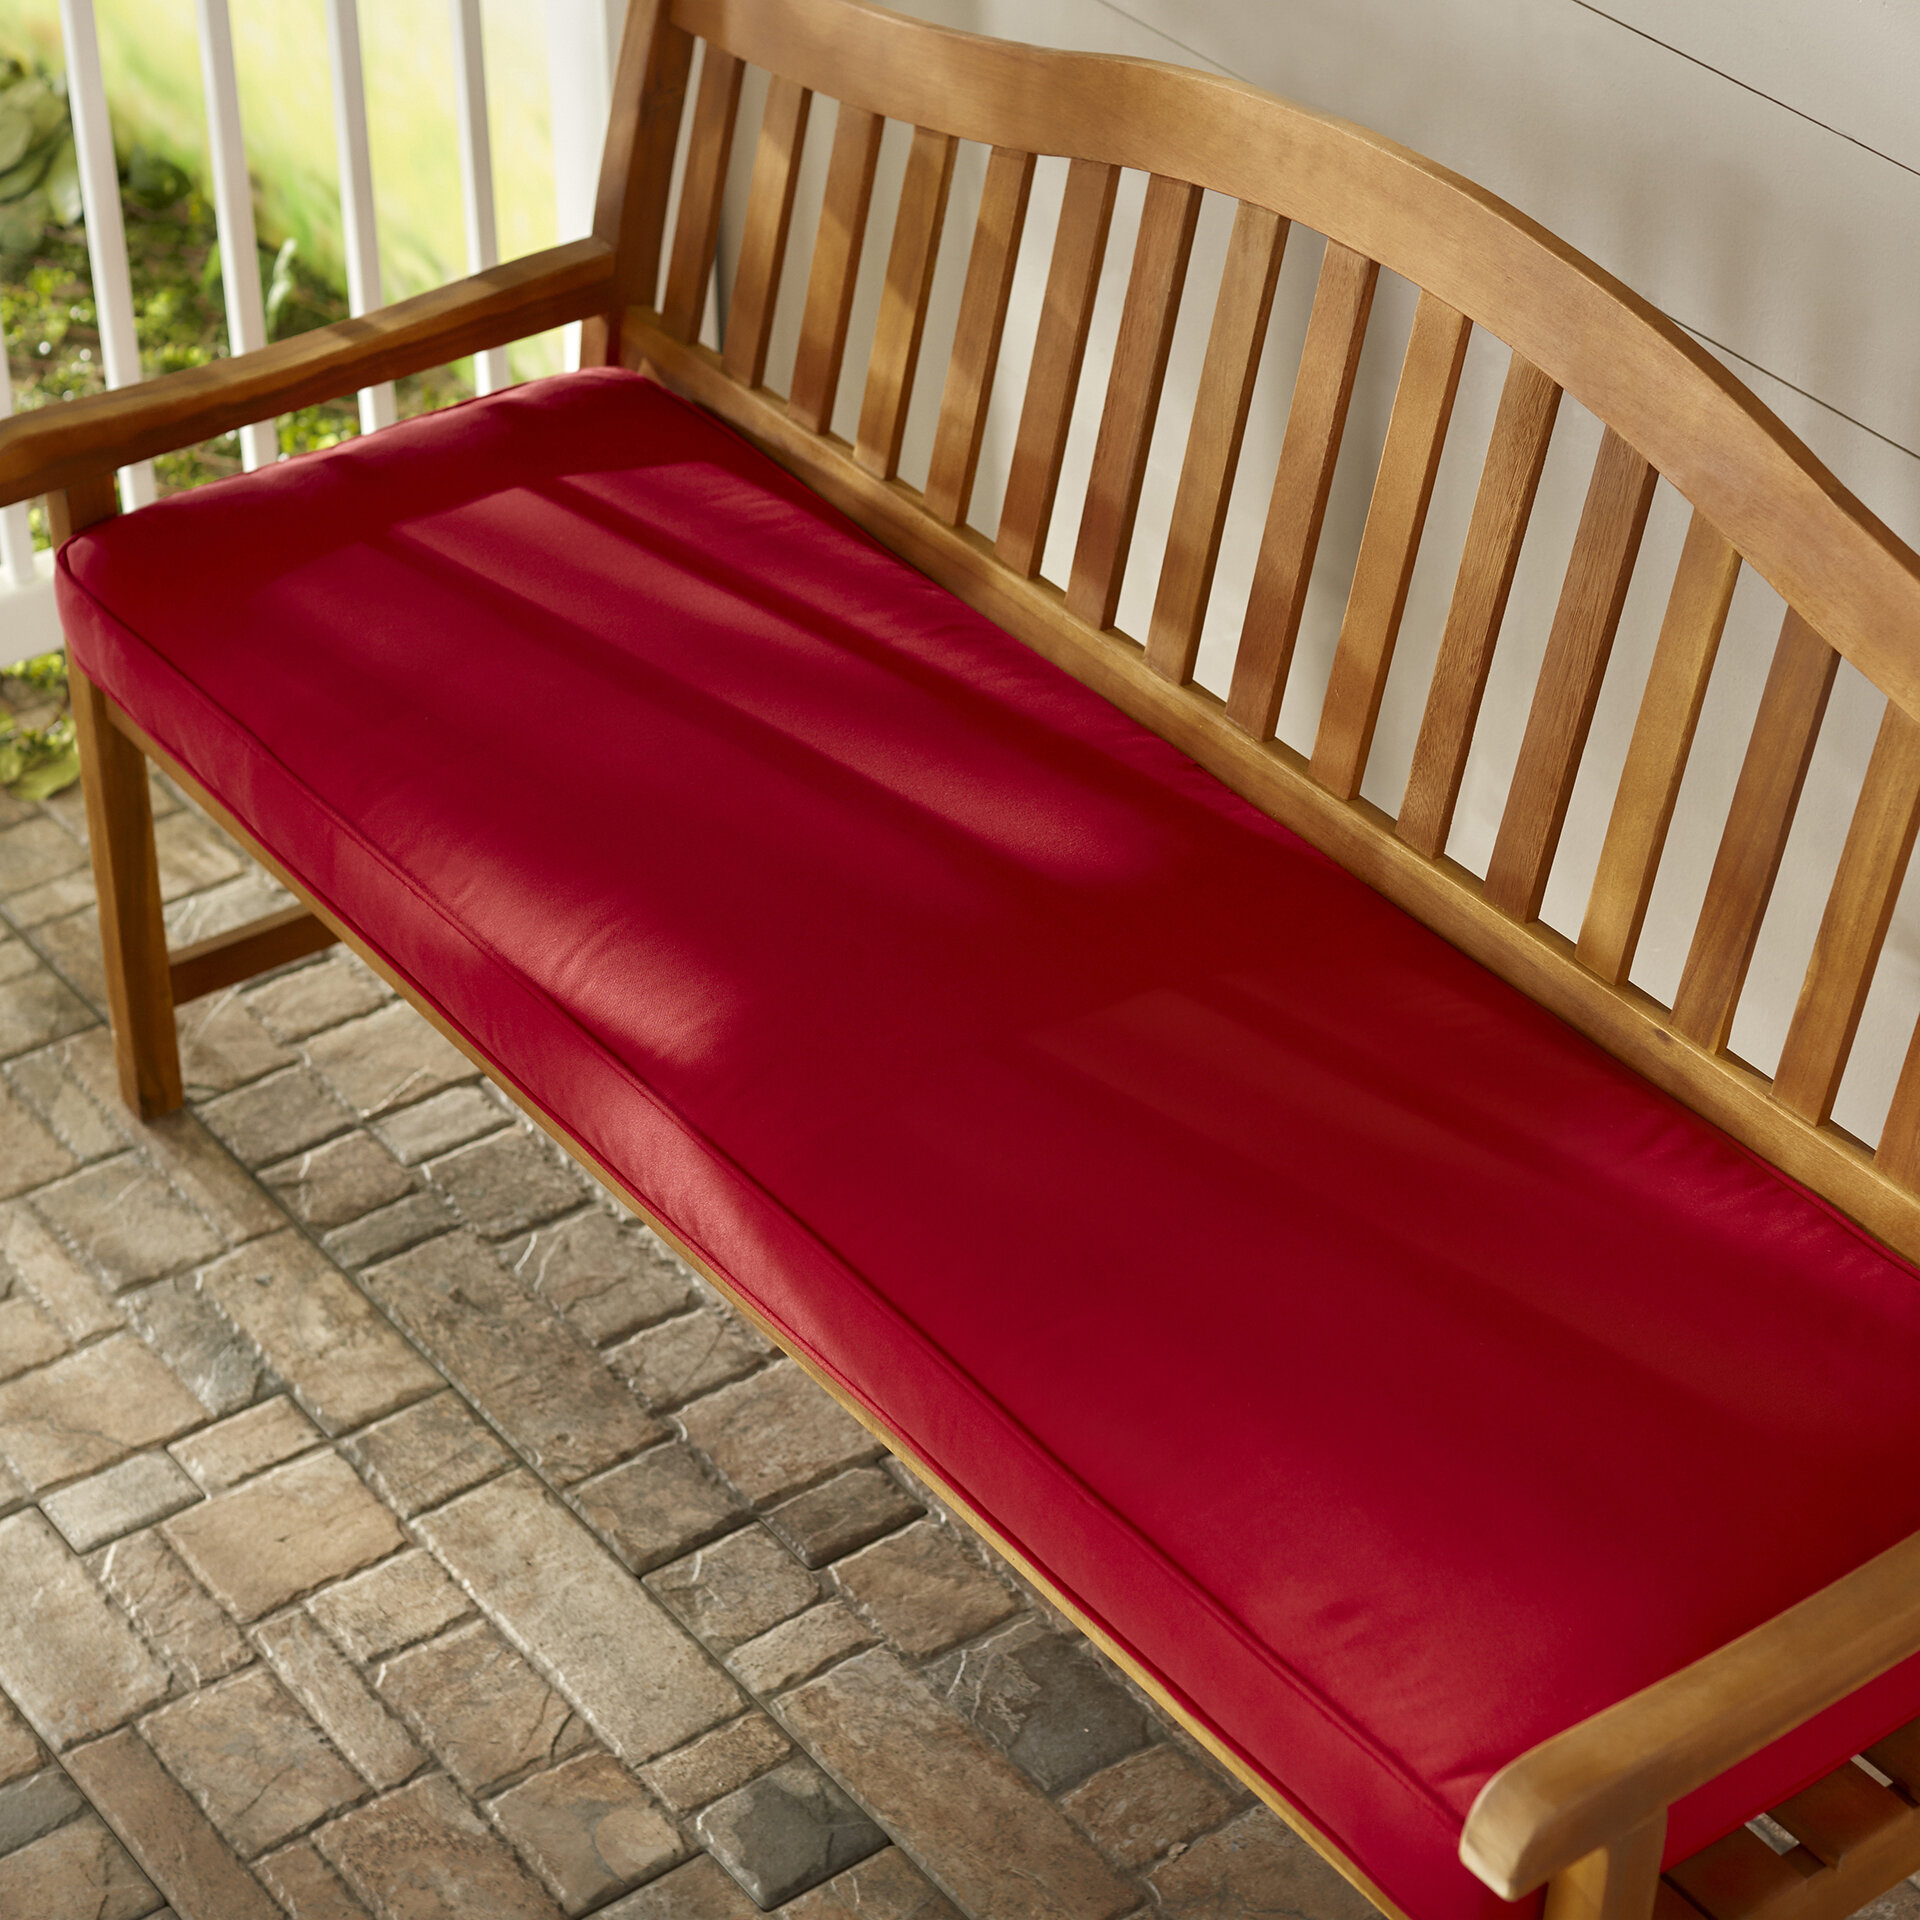 Telleman Outdoor Sunbrella Bench Cushion Reviews Joss Main